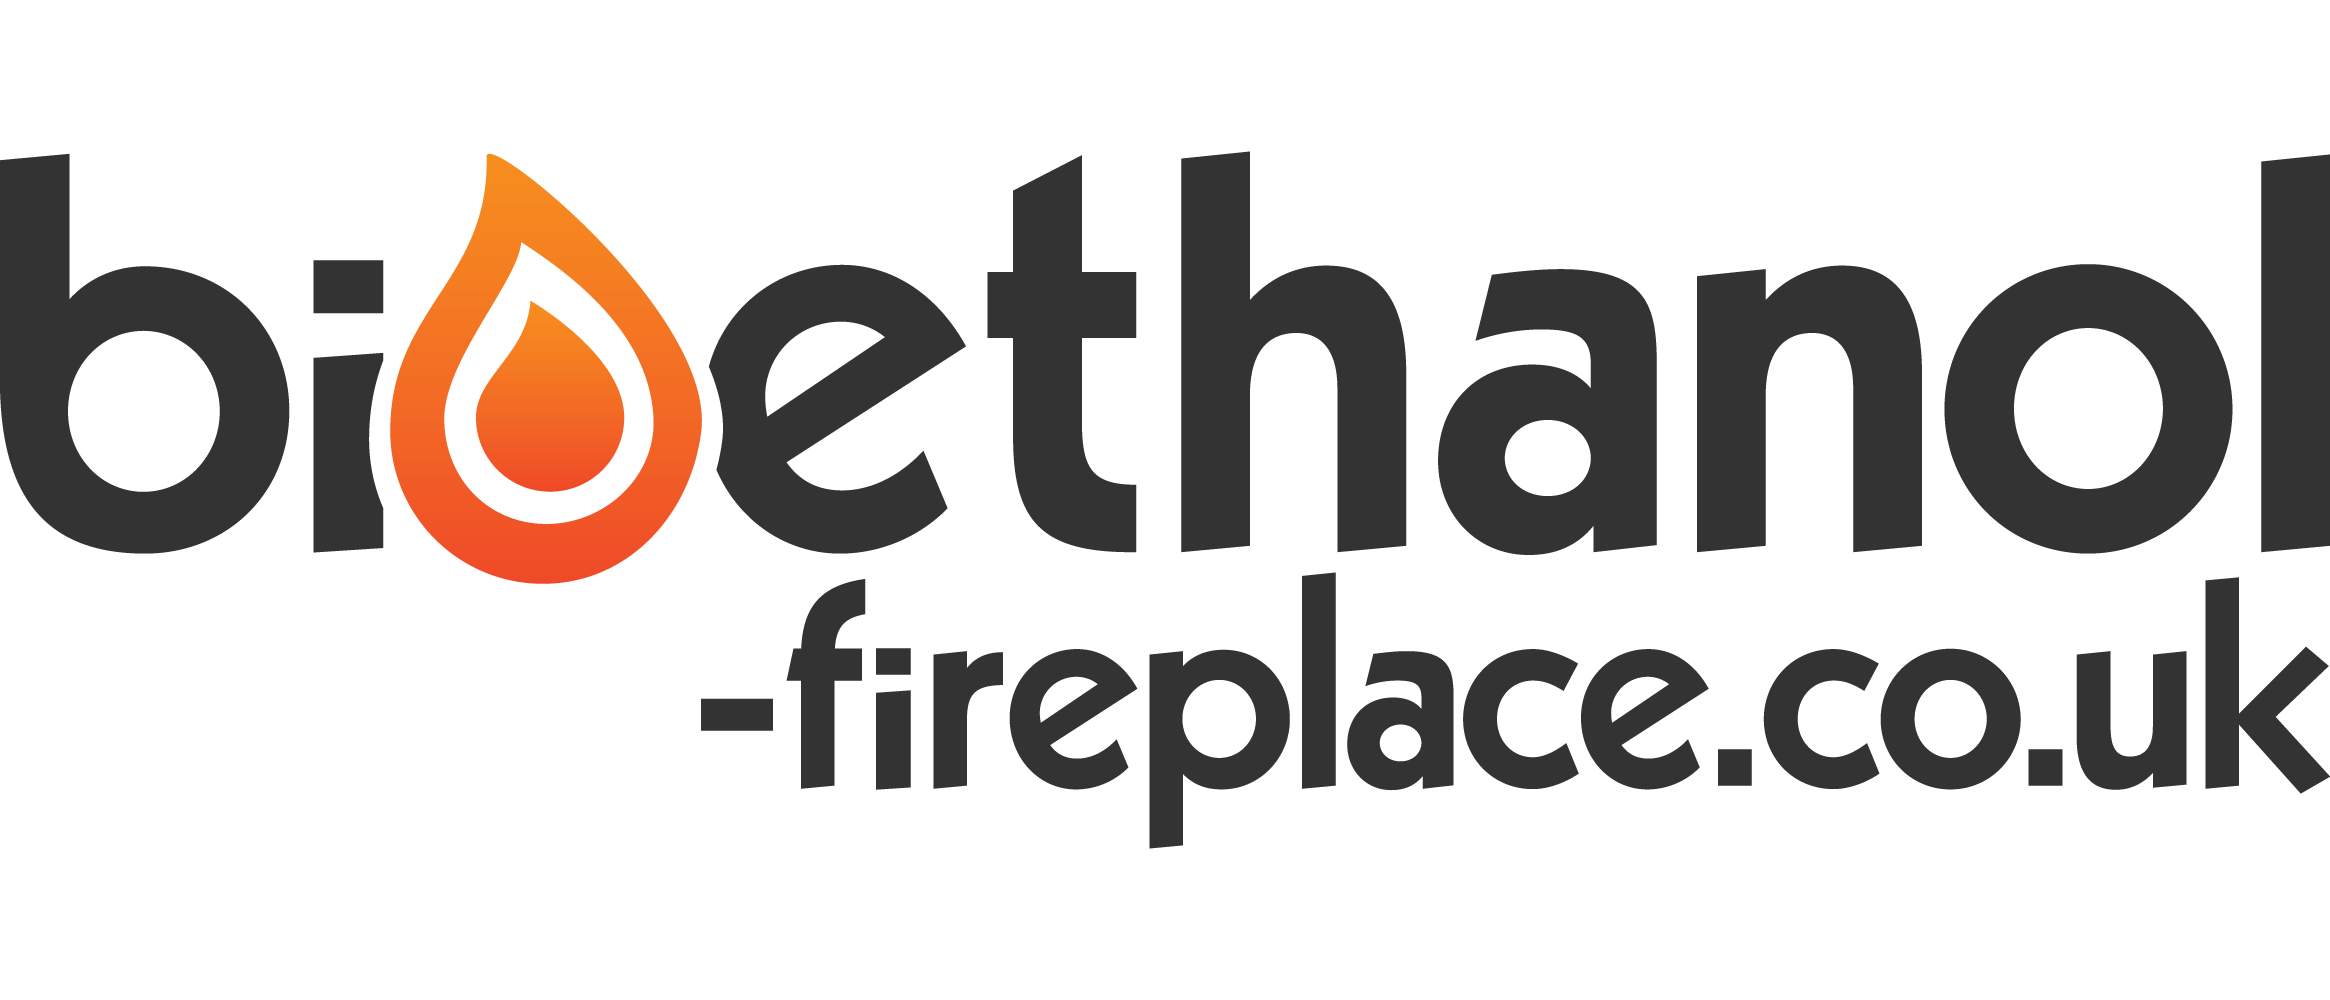 Bioethanol-fireplace.co.uk